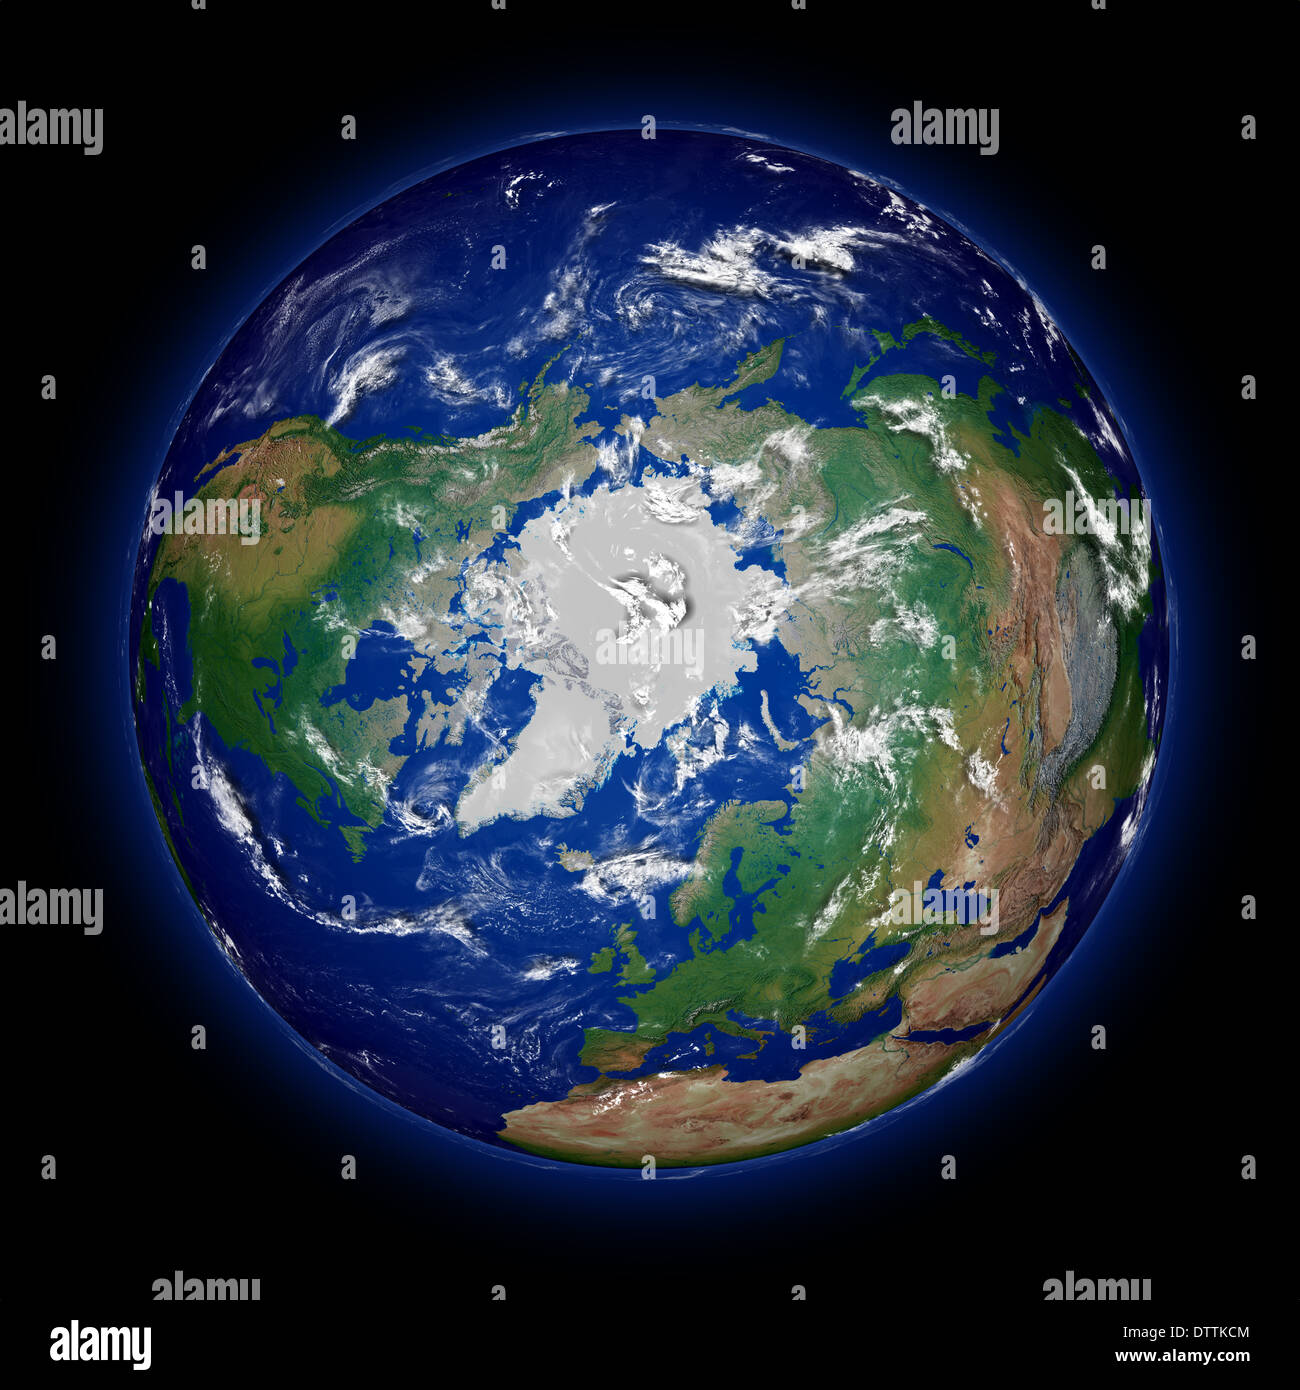 Nordhalbkugel der Erde von oben Nordpol auf schwarzem Hintergrund isoliert gesehen. Mit hohem Detailgrad Planetenoberfläche. Elemente des Bildes von der NASA eingerichtet. Stockfoto